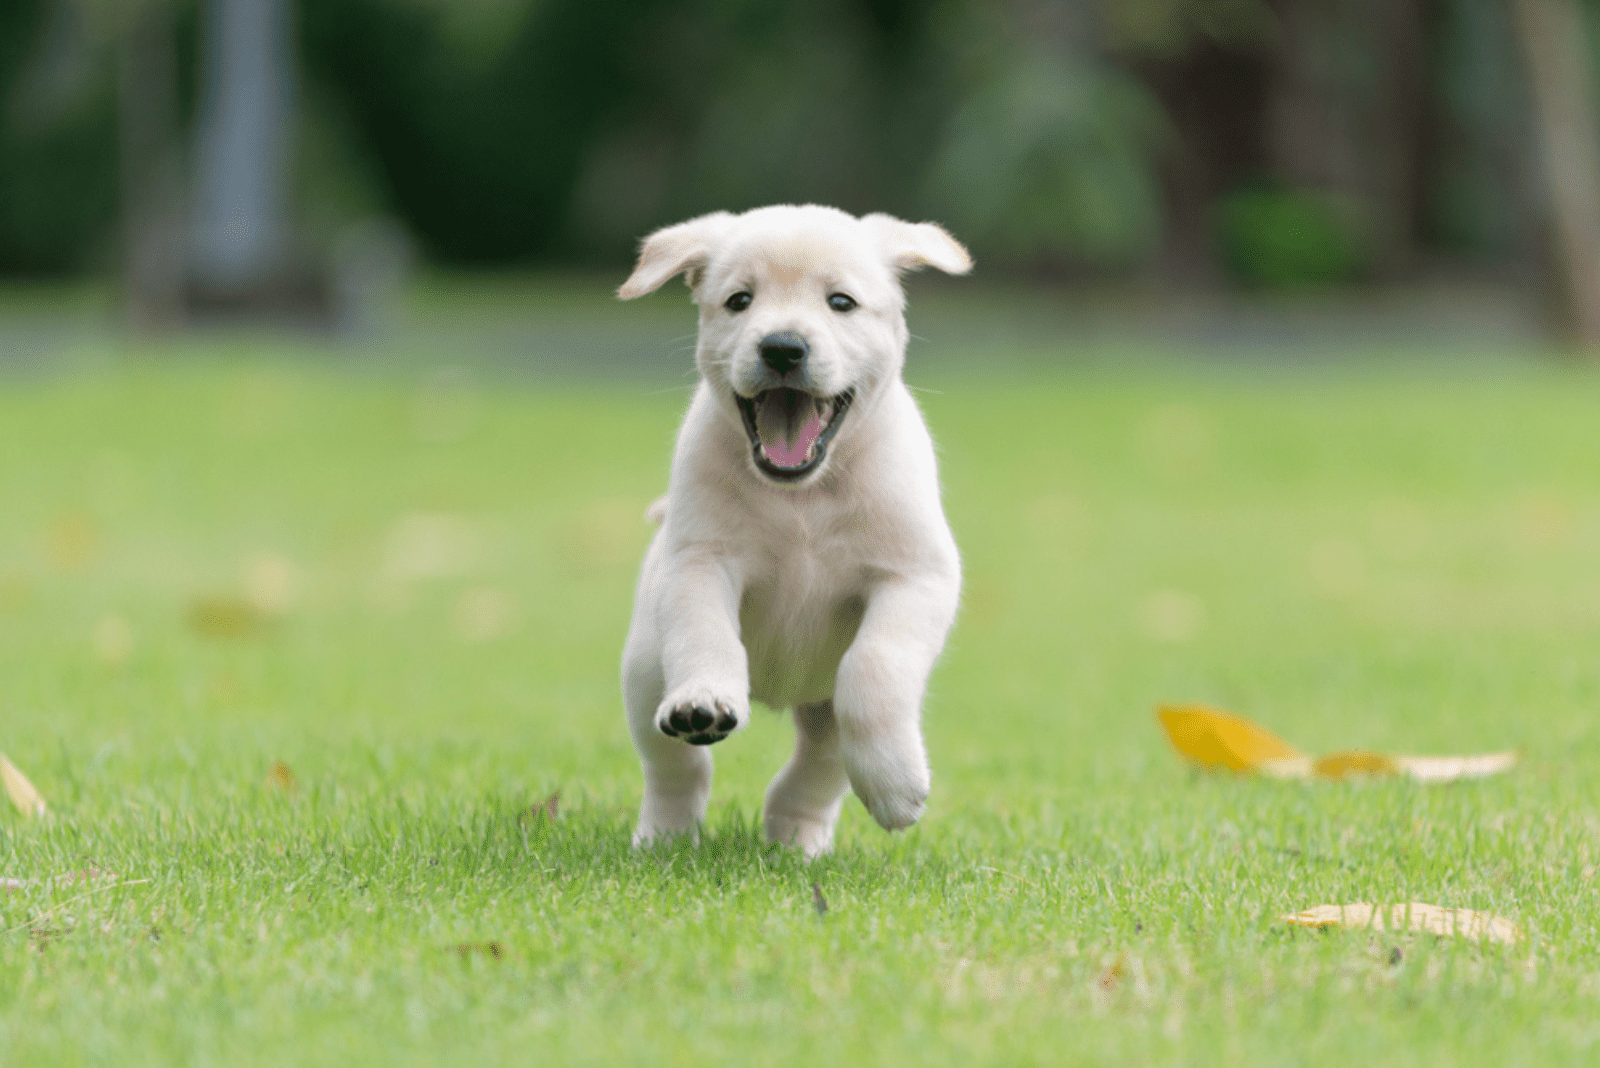 Labrador runs in the field